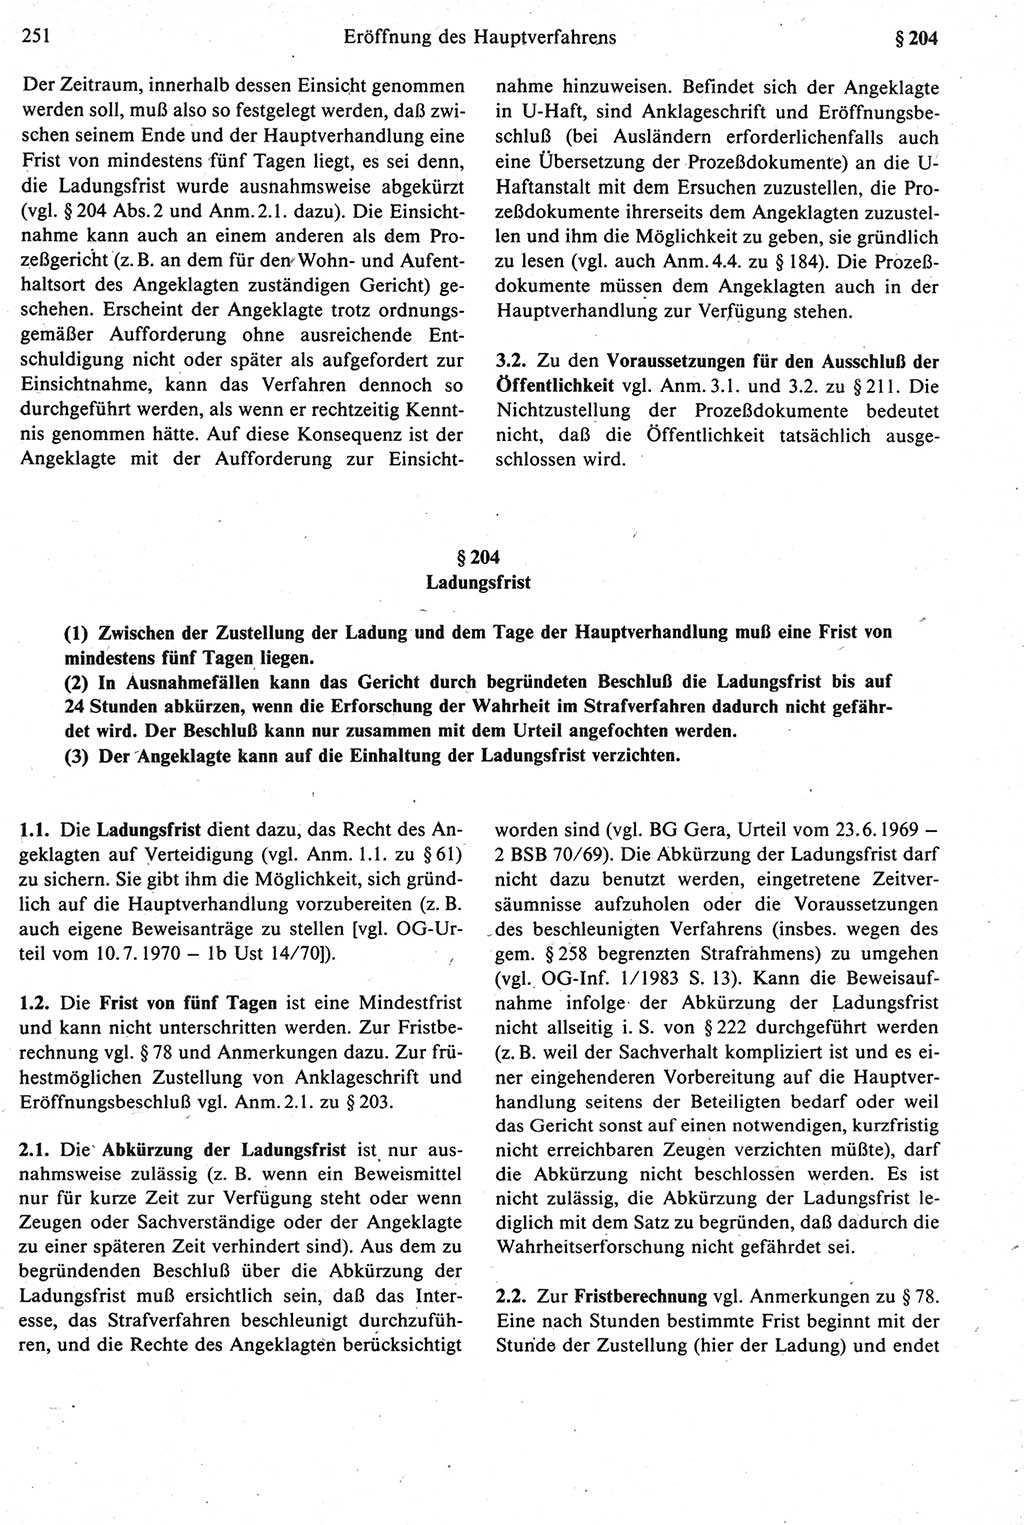 Strafprozeßrecht der DDR [Deutsche Demokratische Republik], Kommentar zur Strafprozeßordnung (StPO) 1987, Seite 251 (Strafprozeßr. DDR Komm. StPO 1987, S. 251)